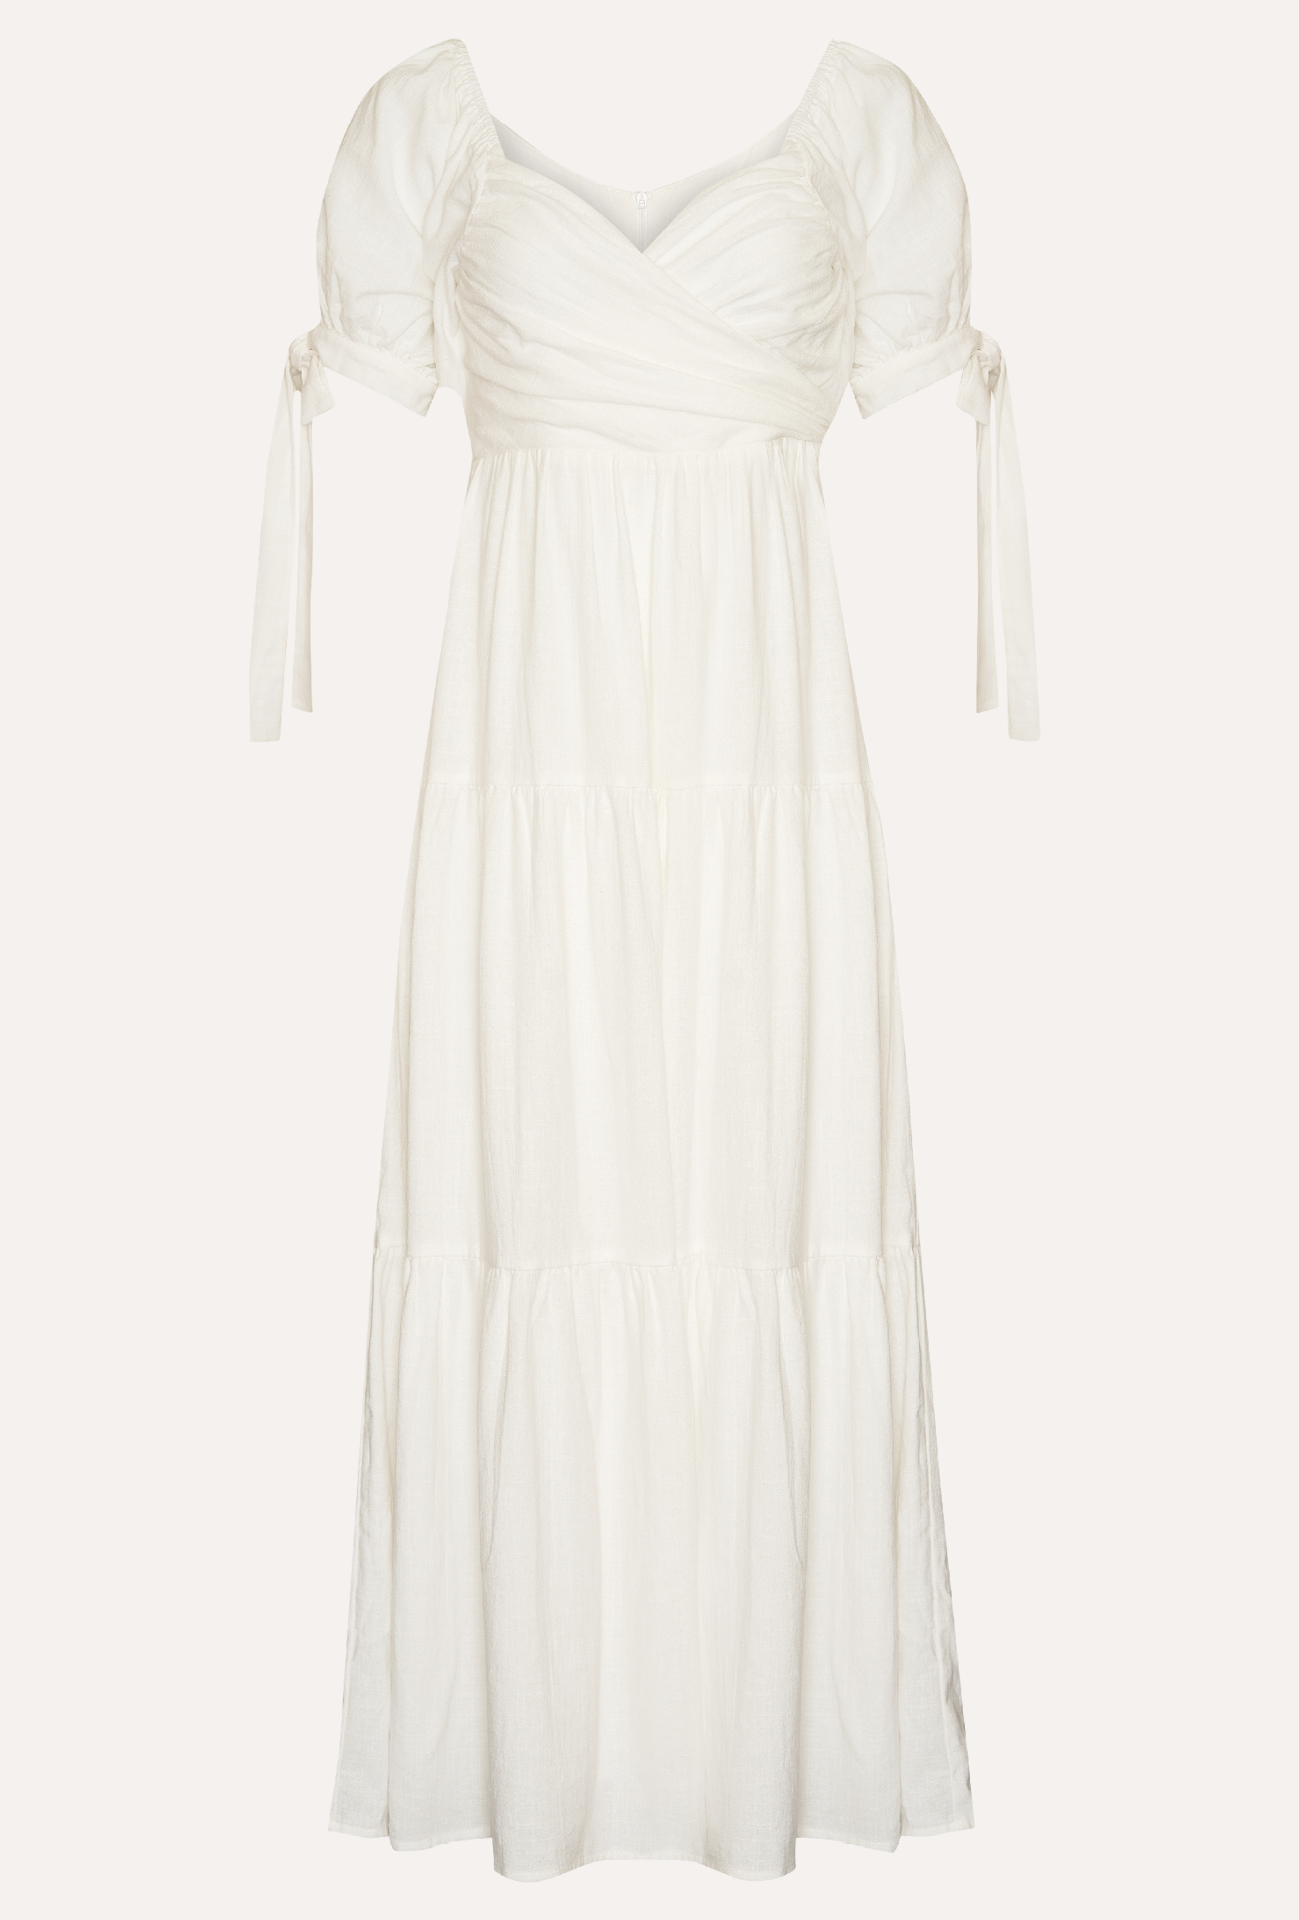 TINSLEY MAXI DRESS - WHITE